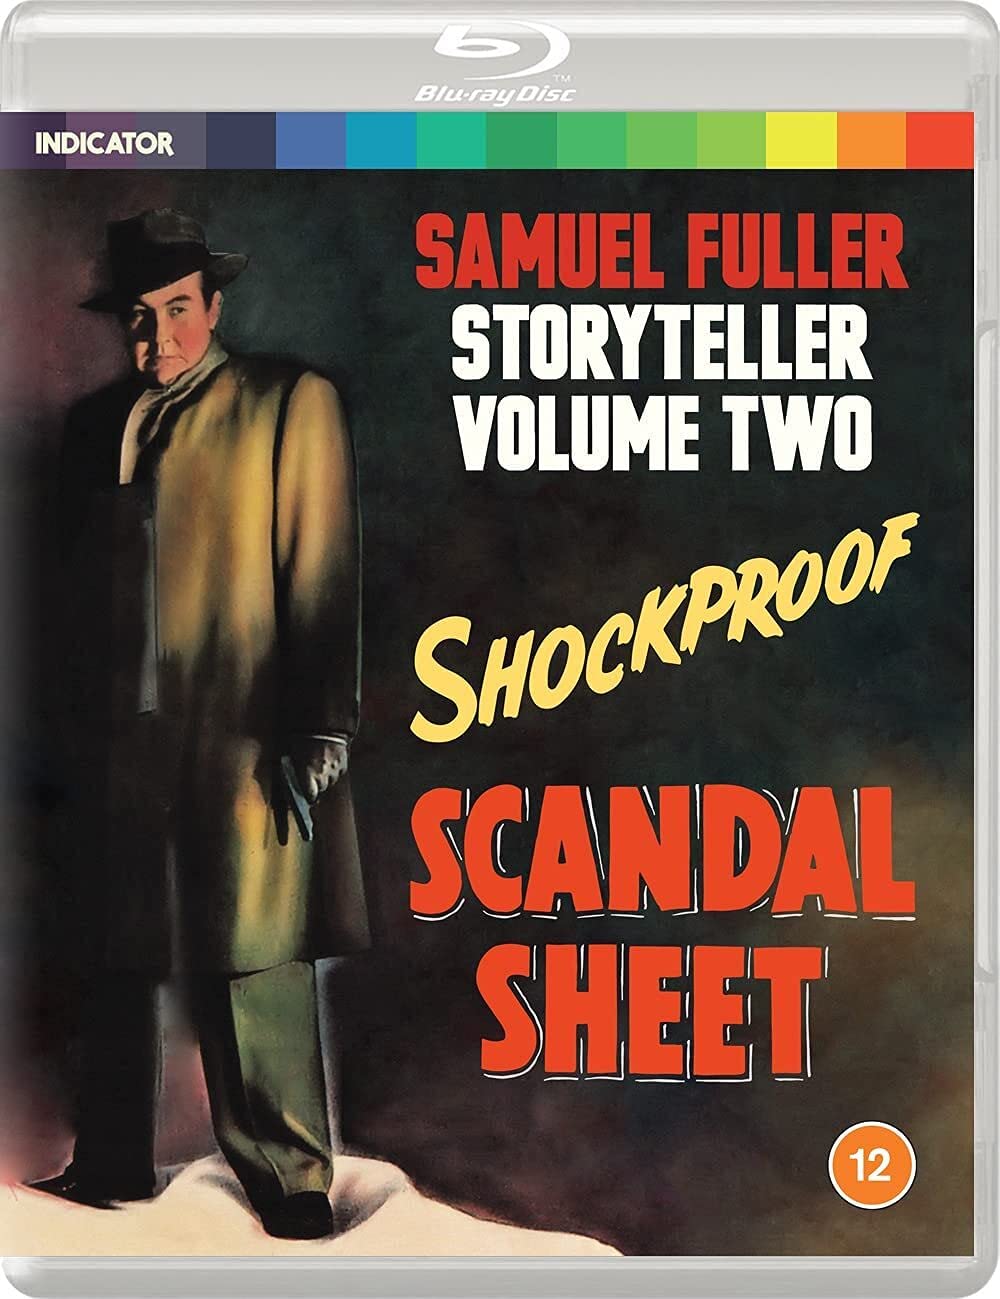 Samuel Fuller: Storyteller Volume Two (Standard Edition) [Blu-ray]